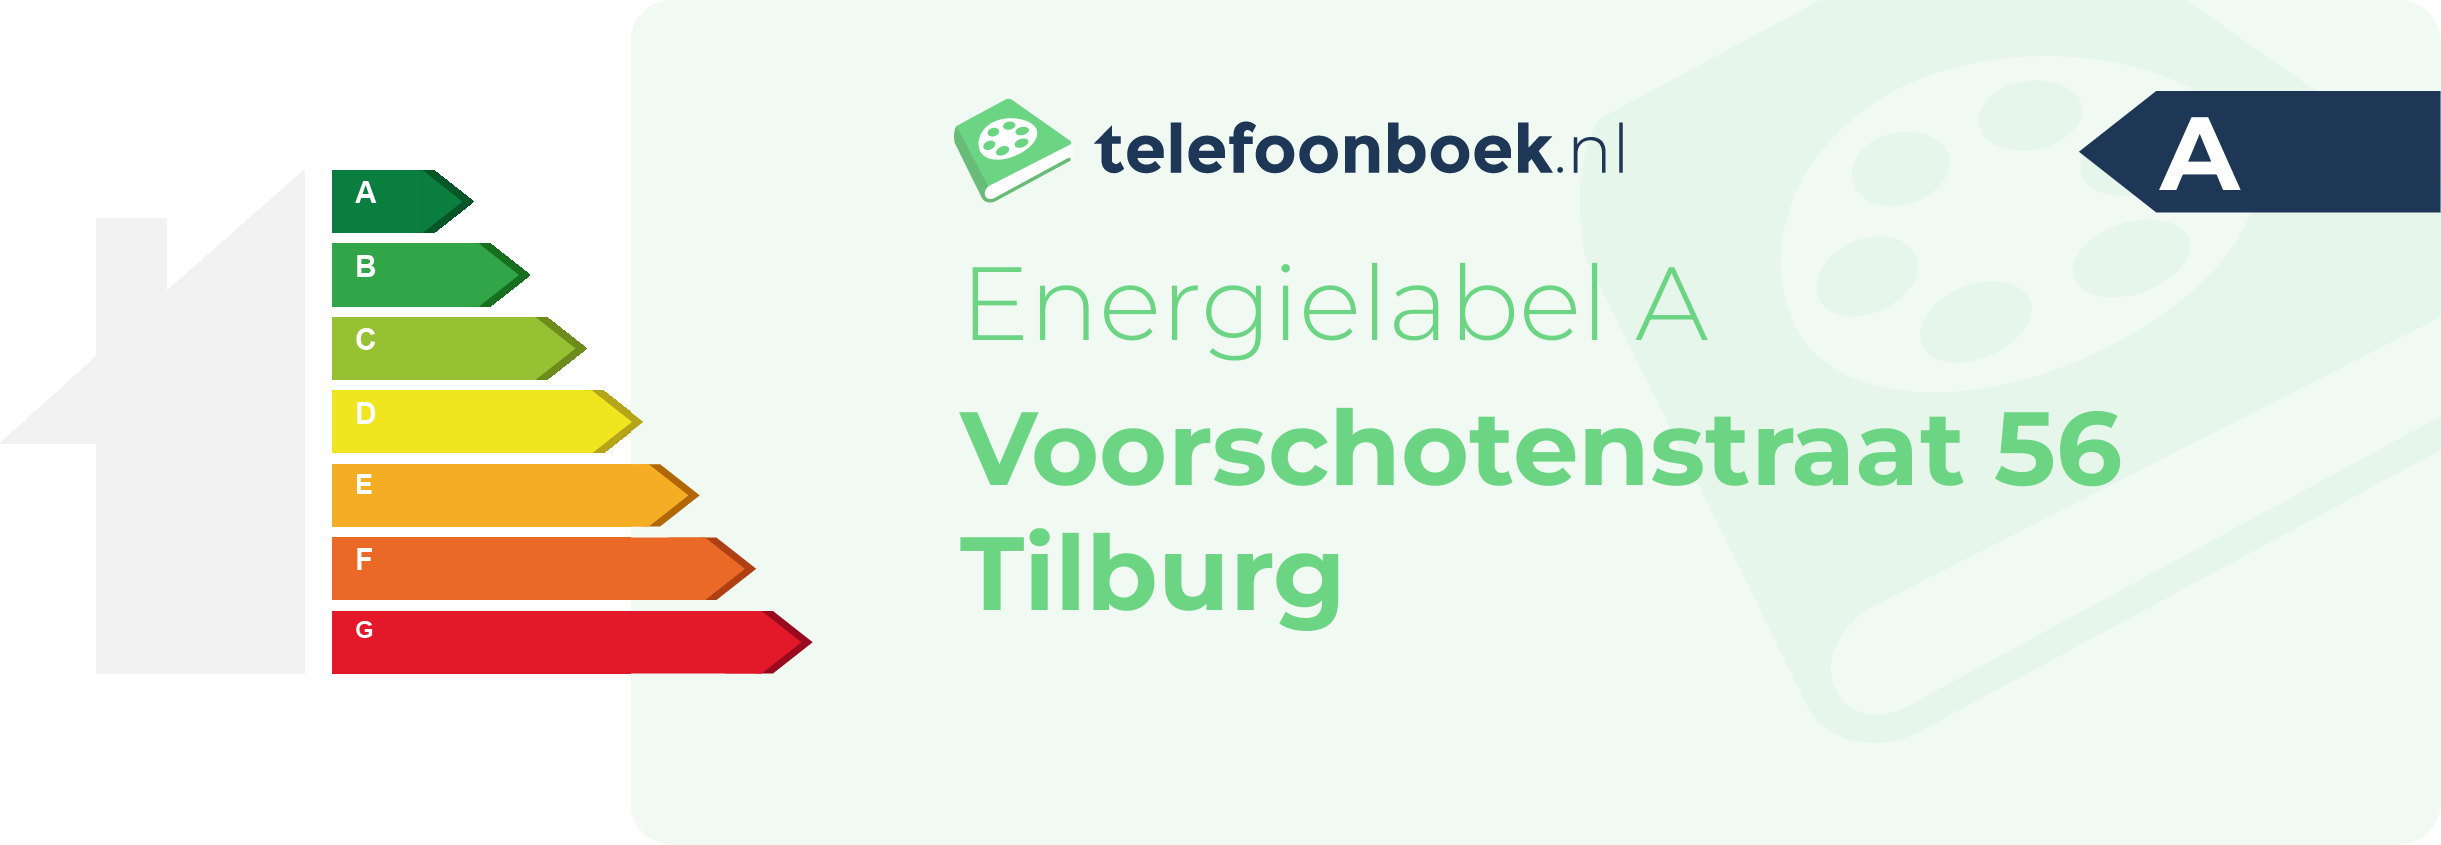 Energielabel Voorschotenstraat 56 Tilburg